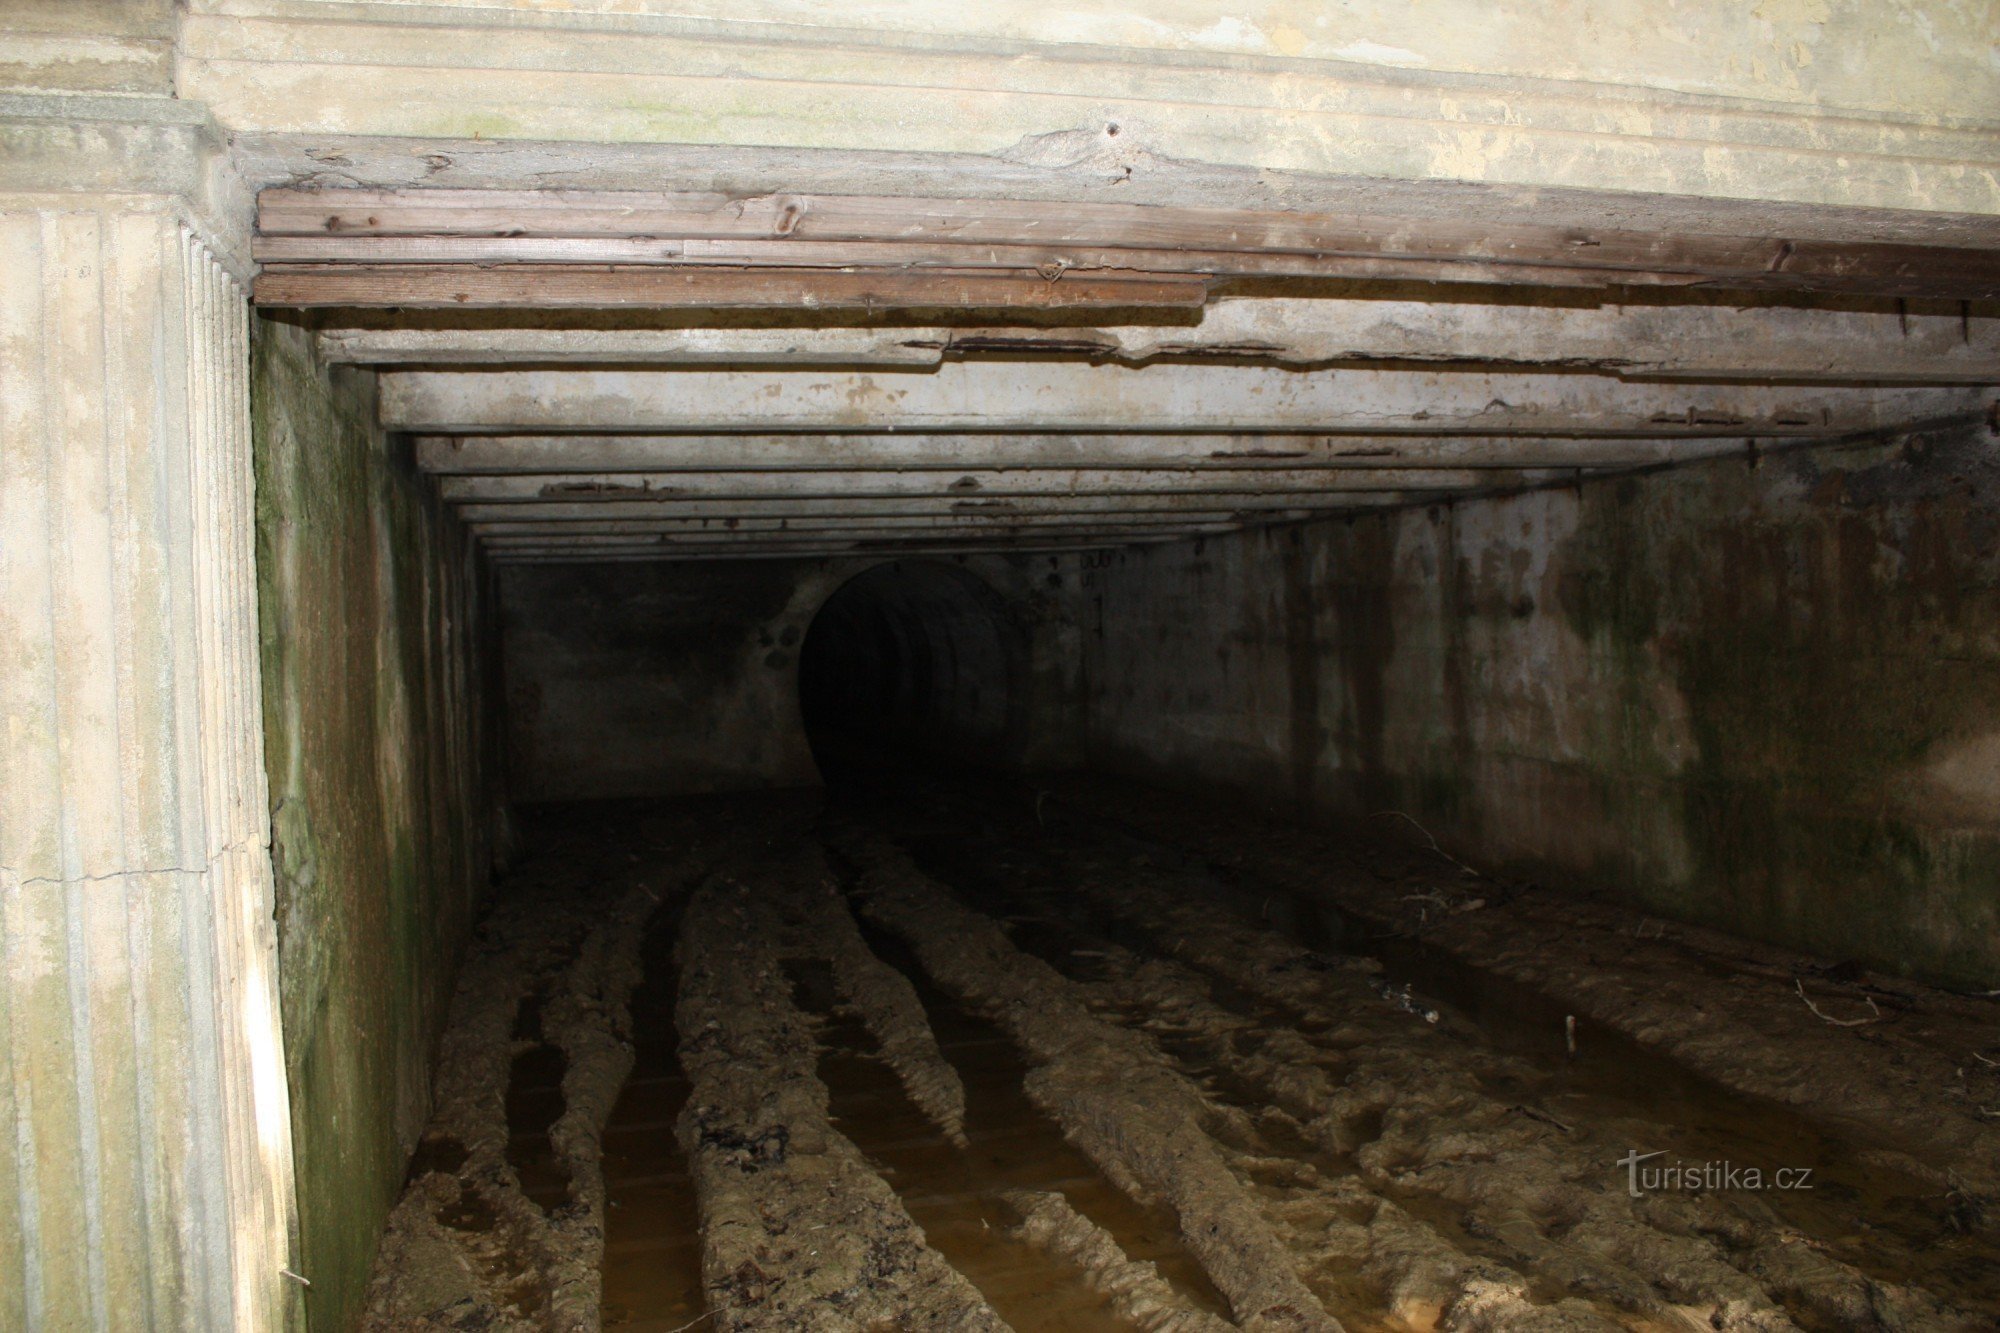 Der Eingangsteil des Schmalspurbahntunnels